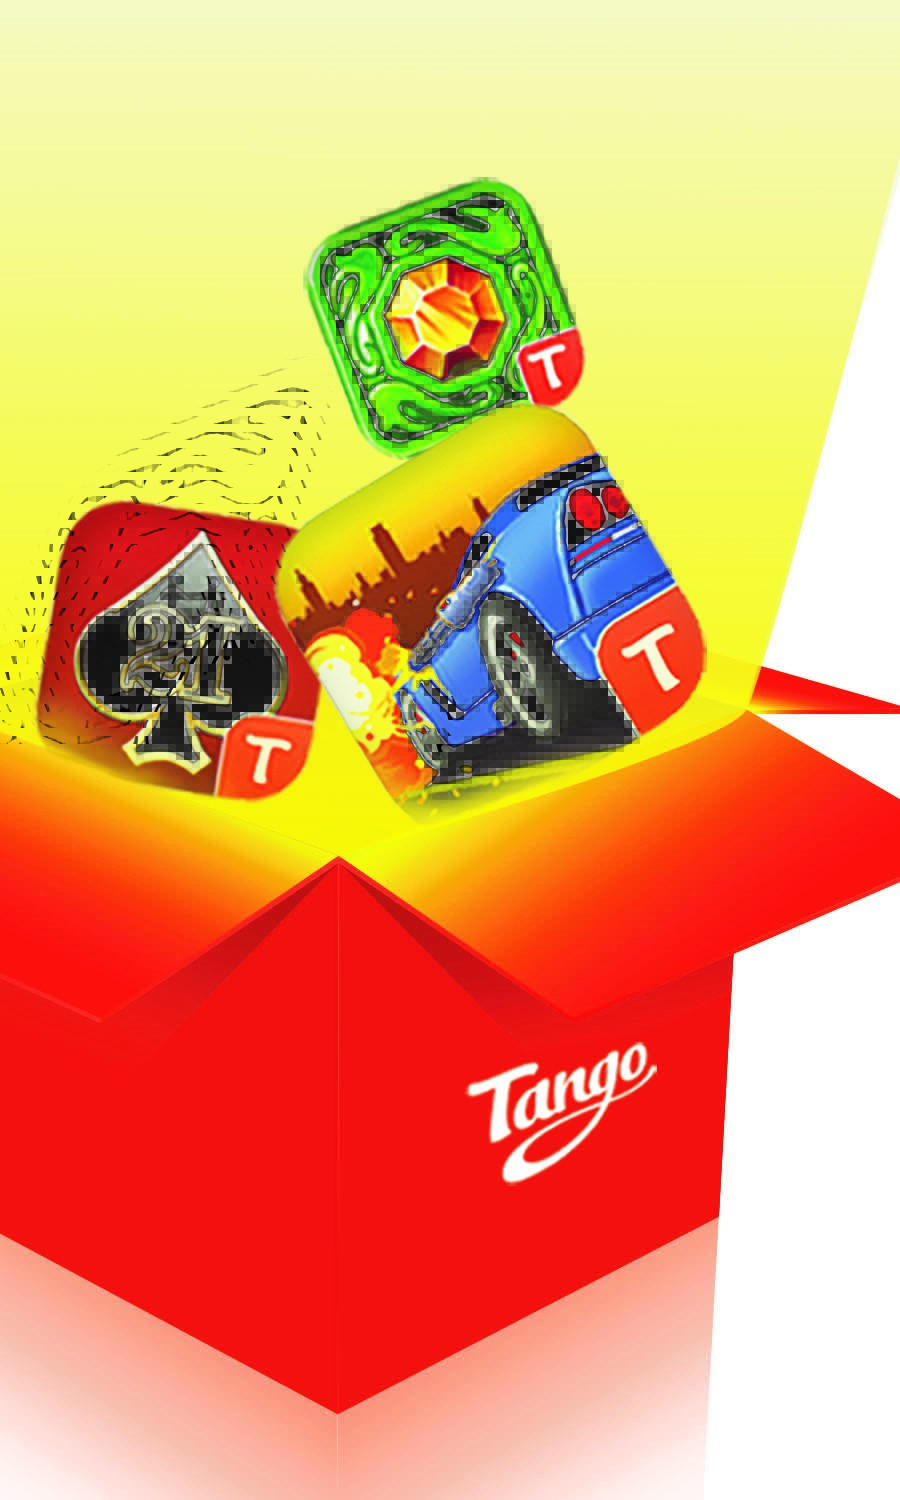 Tango_Games Fund_Image